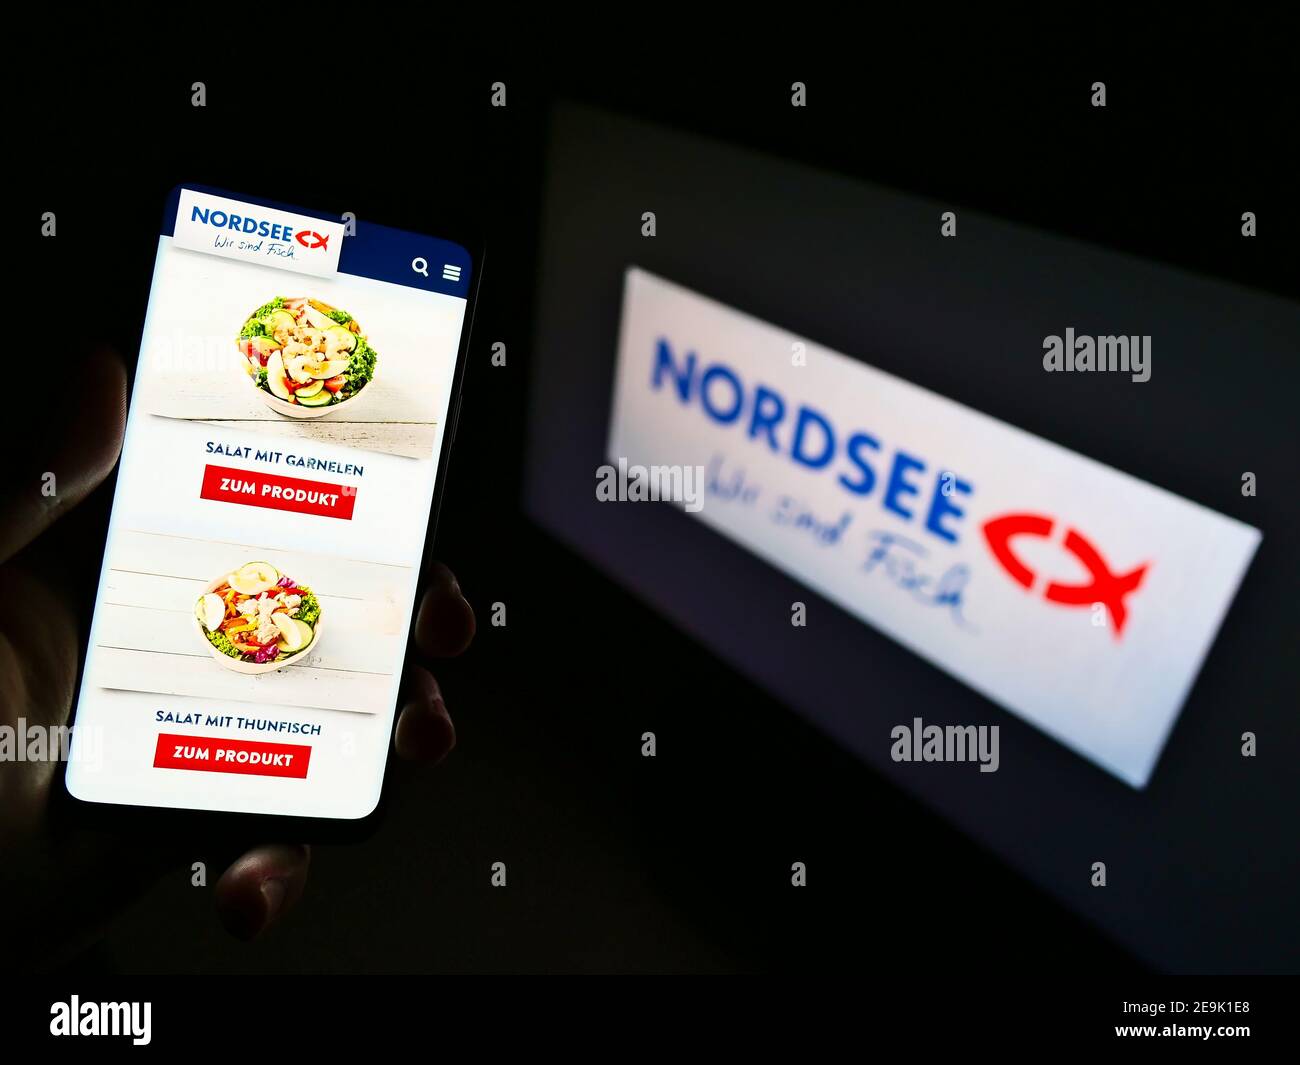 Persona titolare smartphone con prodotti della catena tedesca di ristoranti fast-food Nordsee GmbH in esposizione davanti al logo aziendale. Mettere a fuoco lo schermo del telefono. Foto Stock